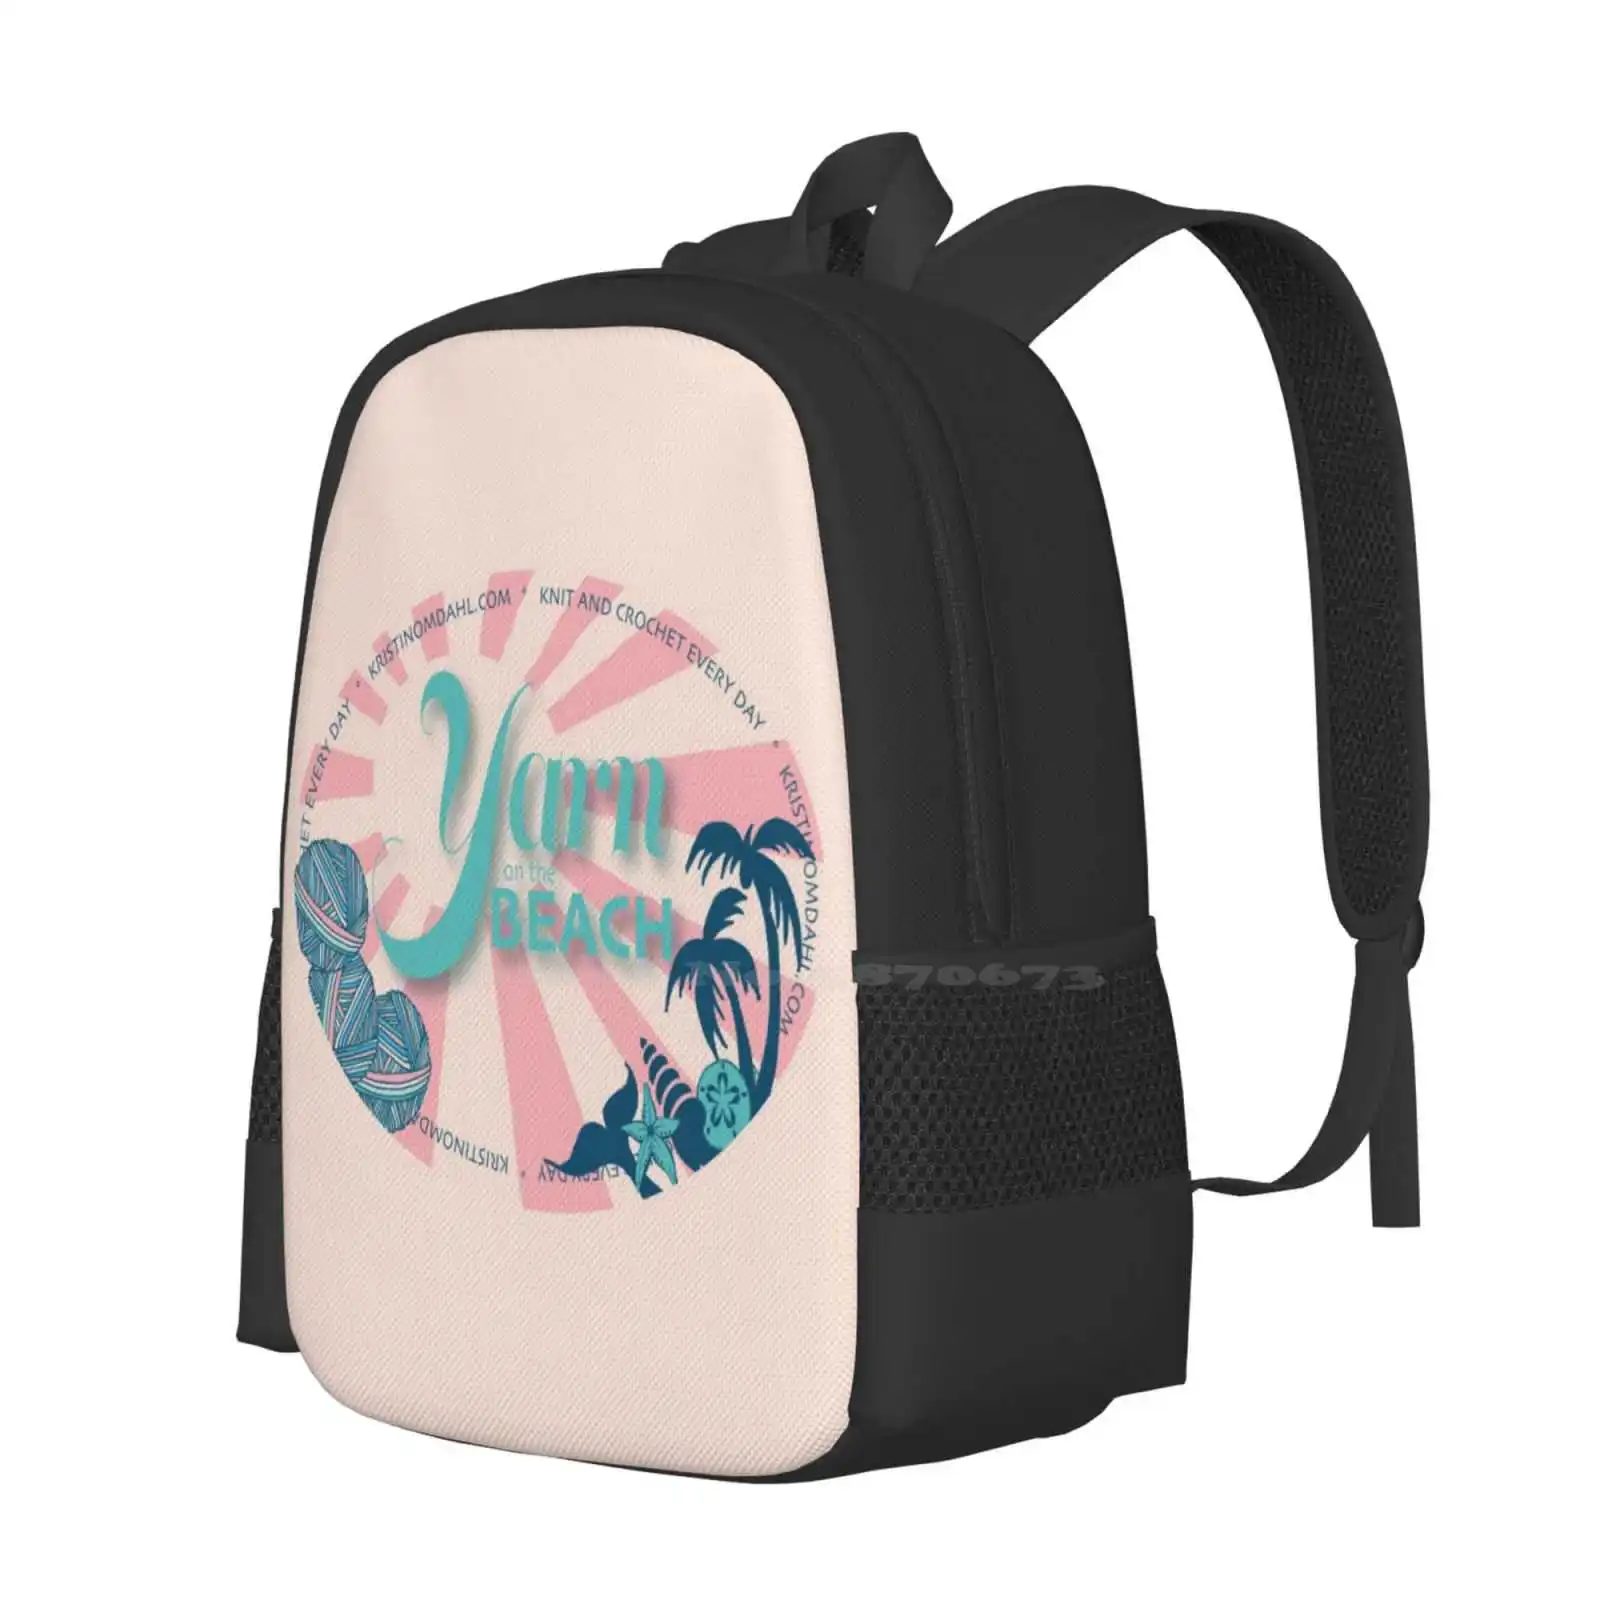 Пряжа на пляже 3D принт Дизайн Рюкзак Студенческая сумка Вязание крючком Шарики из пряжи Кристин Омдал 1